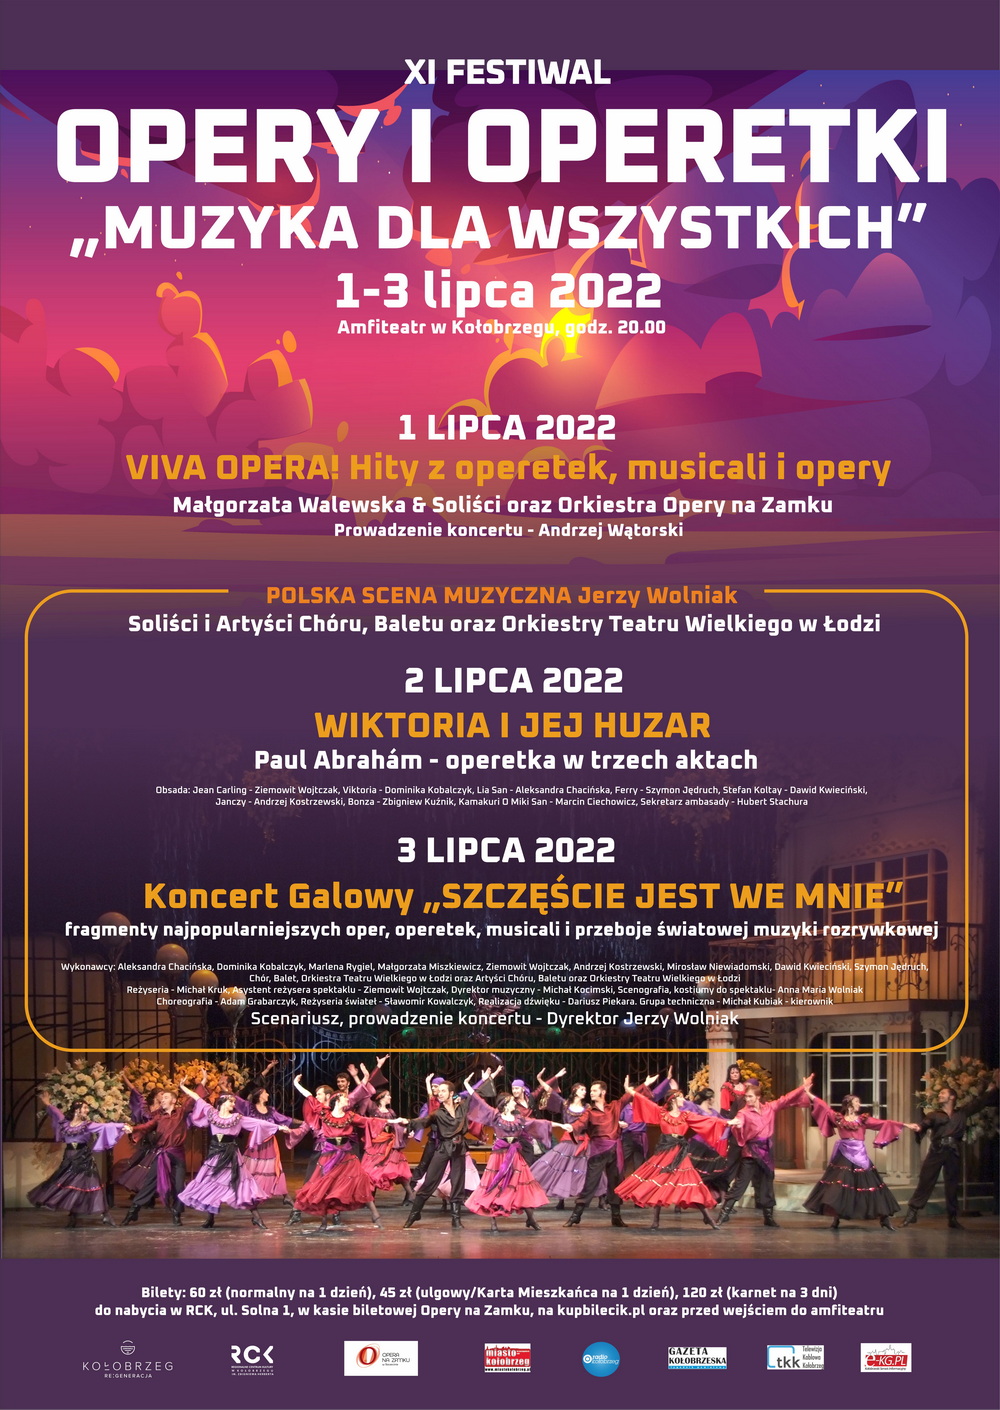 XI Festiwal Opery i Operetki 2022 